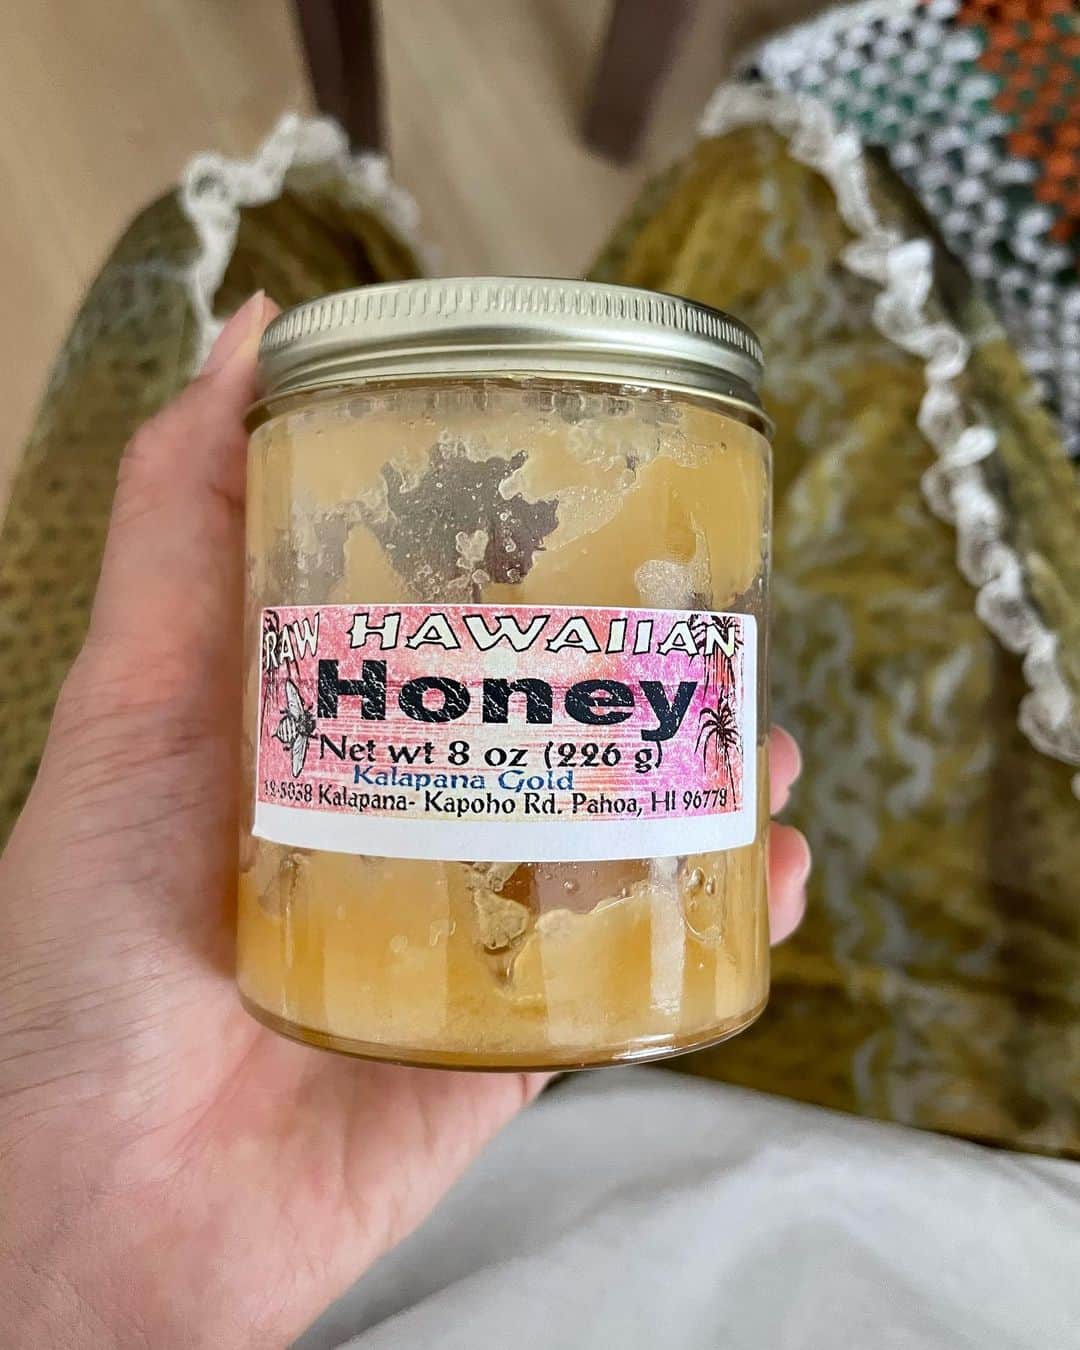 mao mitsuiのインスタグラム：「My Essentials 💛💛💛  ①Big Island産 Hawaiian Raw Honey これはハワイ島のローカルスーパーマーケットで購入した ミツバチ達がトロピカルフルーツのお花に飛び回って集めたミツでできたローハニー✨ 体調がすぐれないときとか、喉がイガイガしているときは、ティースプーン1杯を舐めます。 喉はすぐにしっとりするし、炎症を抑えてくれるので大事に大事にたべてます🍯  ② @harvestmyspoon JOY Enzyme Tablet これがないと困る！って思いで作った酵素サプリメント。 毎日のエネルギーと体内からのケアの為に飲んでいます。 自社のオリジナルの微生物酵素を無農薬の伊勢茶に染み込ませてタブレットにしました🍃 この子の役割は自分の体内で作られる酵素を増やすようにスイッチを入れてくれます。 疲れやすく、翌日まで疲れが取れない人、腸の調子が気になる人、二日酔いになる人、エネルギー不足を感じる人には是非飲んでほしいです✨ 毎回自信満々ですが、ほんとに仙豆のようなサプリメントです🌞  ③ @cosmosjuice_tomigaya COSMOS SHOT BOTTLE 沖縄で太陽をしっかり浴びた無農薬うこん、高知産の立派な無農薬生姜に広島産無農薬のジューシーな甘夏とレモンでできたジンジャーターメリックショット。 辛さもあるけど、飲めば飲むほどおいしくて病みつきになります。飲んだ瞬間身体がシャキッと燃える🔥 お店でもいつもジュースにプラスしてお客様におすすめしているんだけど、 朝からCOSMOS SHOTをクイっと飲んでスタートしてるお客様を見ると、元気になるよねー！！って嬉しい⭐️ (お店では小さなグラスでお出ししていて、このボトルは3回分) この間は友人のアーティストの方がライブ前に飲みたいって言ってくれましたが、差し入れなんかにもオススメです。  どれももちろんオーガニックで保存料も添加物もない、自然のものだから安心して食べられるし、 妊娠してから今も完全母乳なのでどんな時も自然のもので身体を回復させていて、お薬はをまったくとらずに過ごしています🍃✨  以上、わたしの必需品でした！」